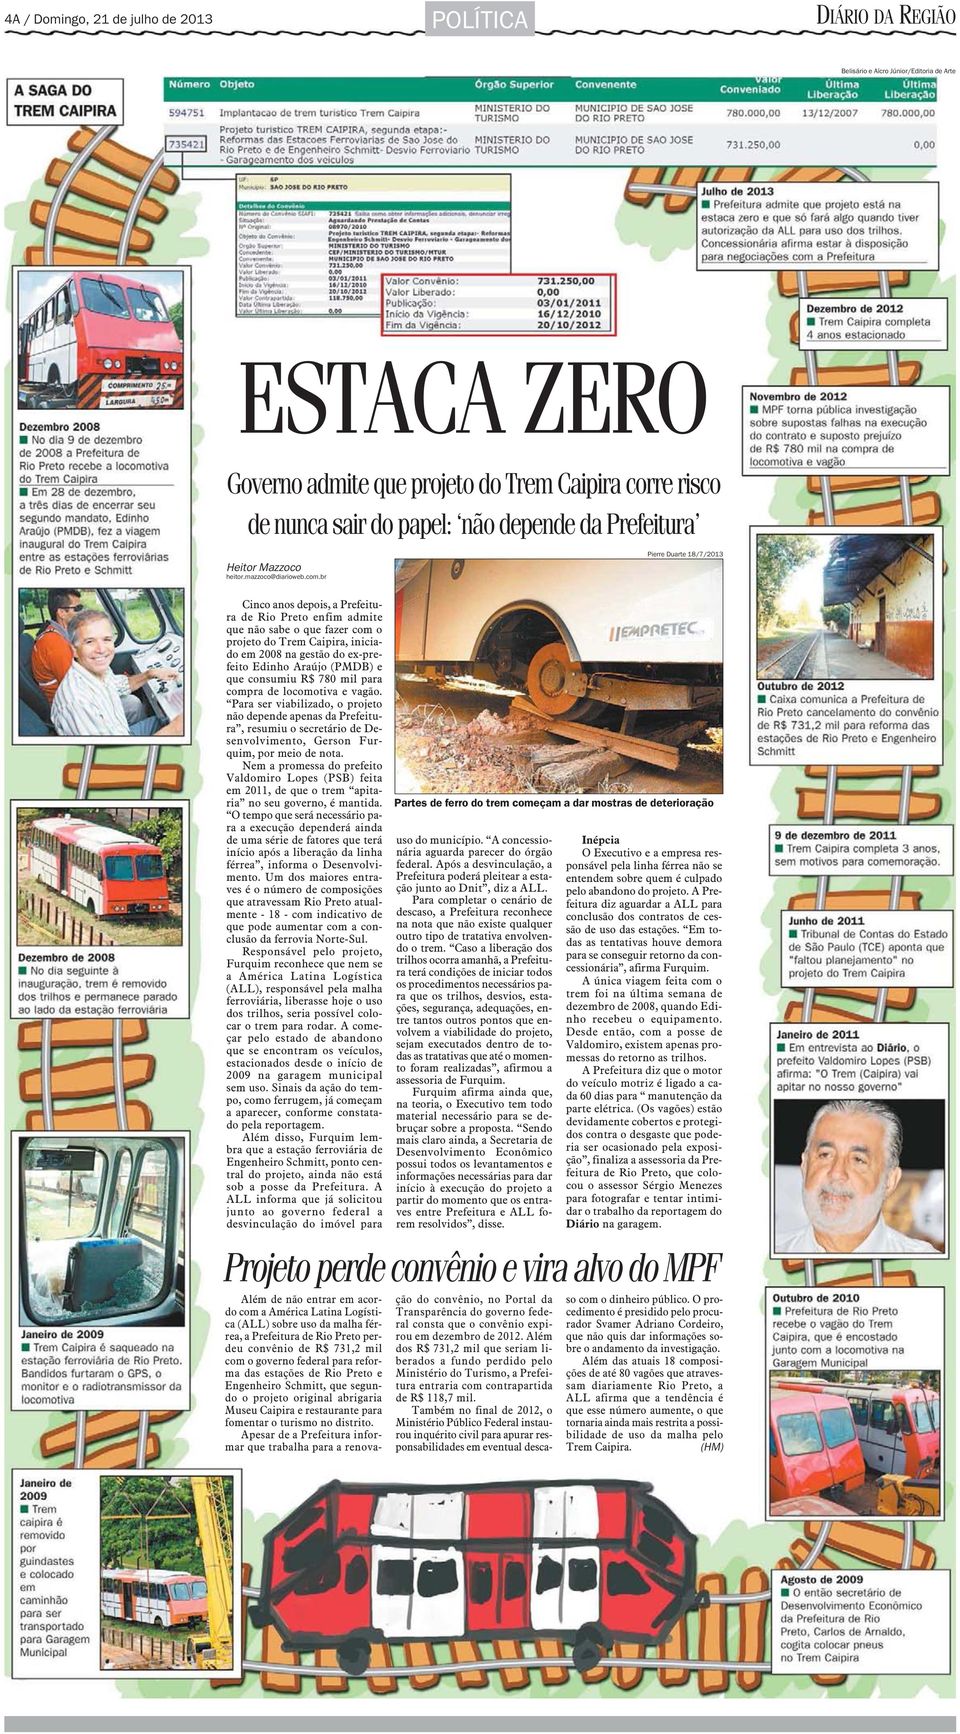 br Cinco anos depois, a Prefeitura de Rio Preto enfim admite que não sabe o que fazer com o projeto do Trem Caipira, iniciado em 2008 na gestão do ex-prefeito Edinho Araújo (PMDB) e que consumiu R$